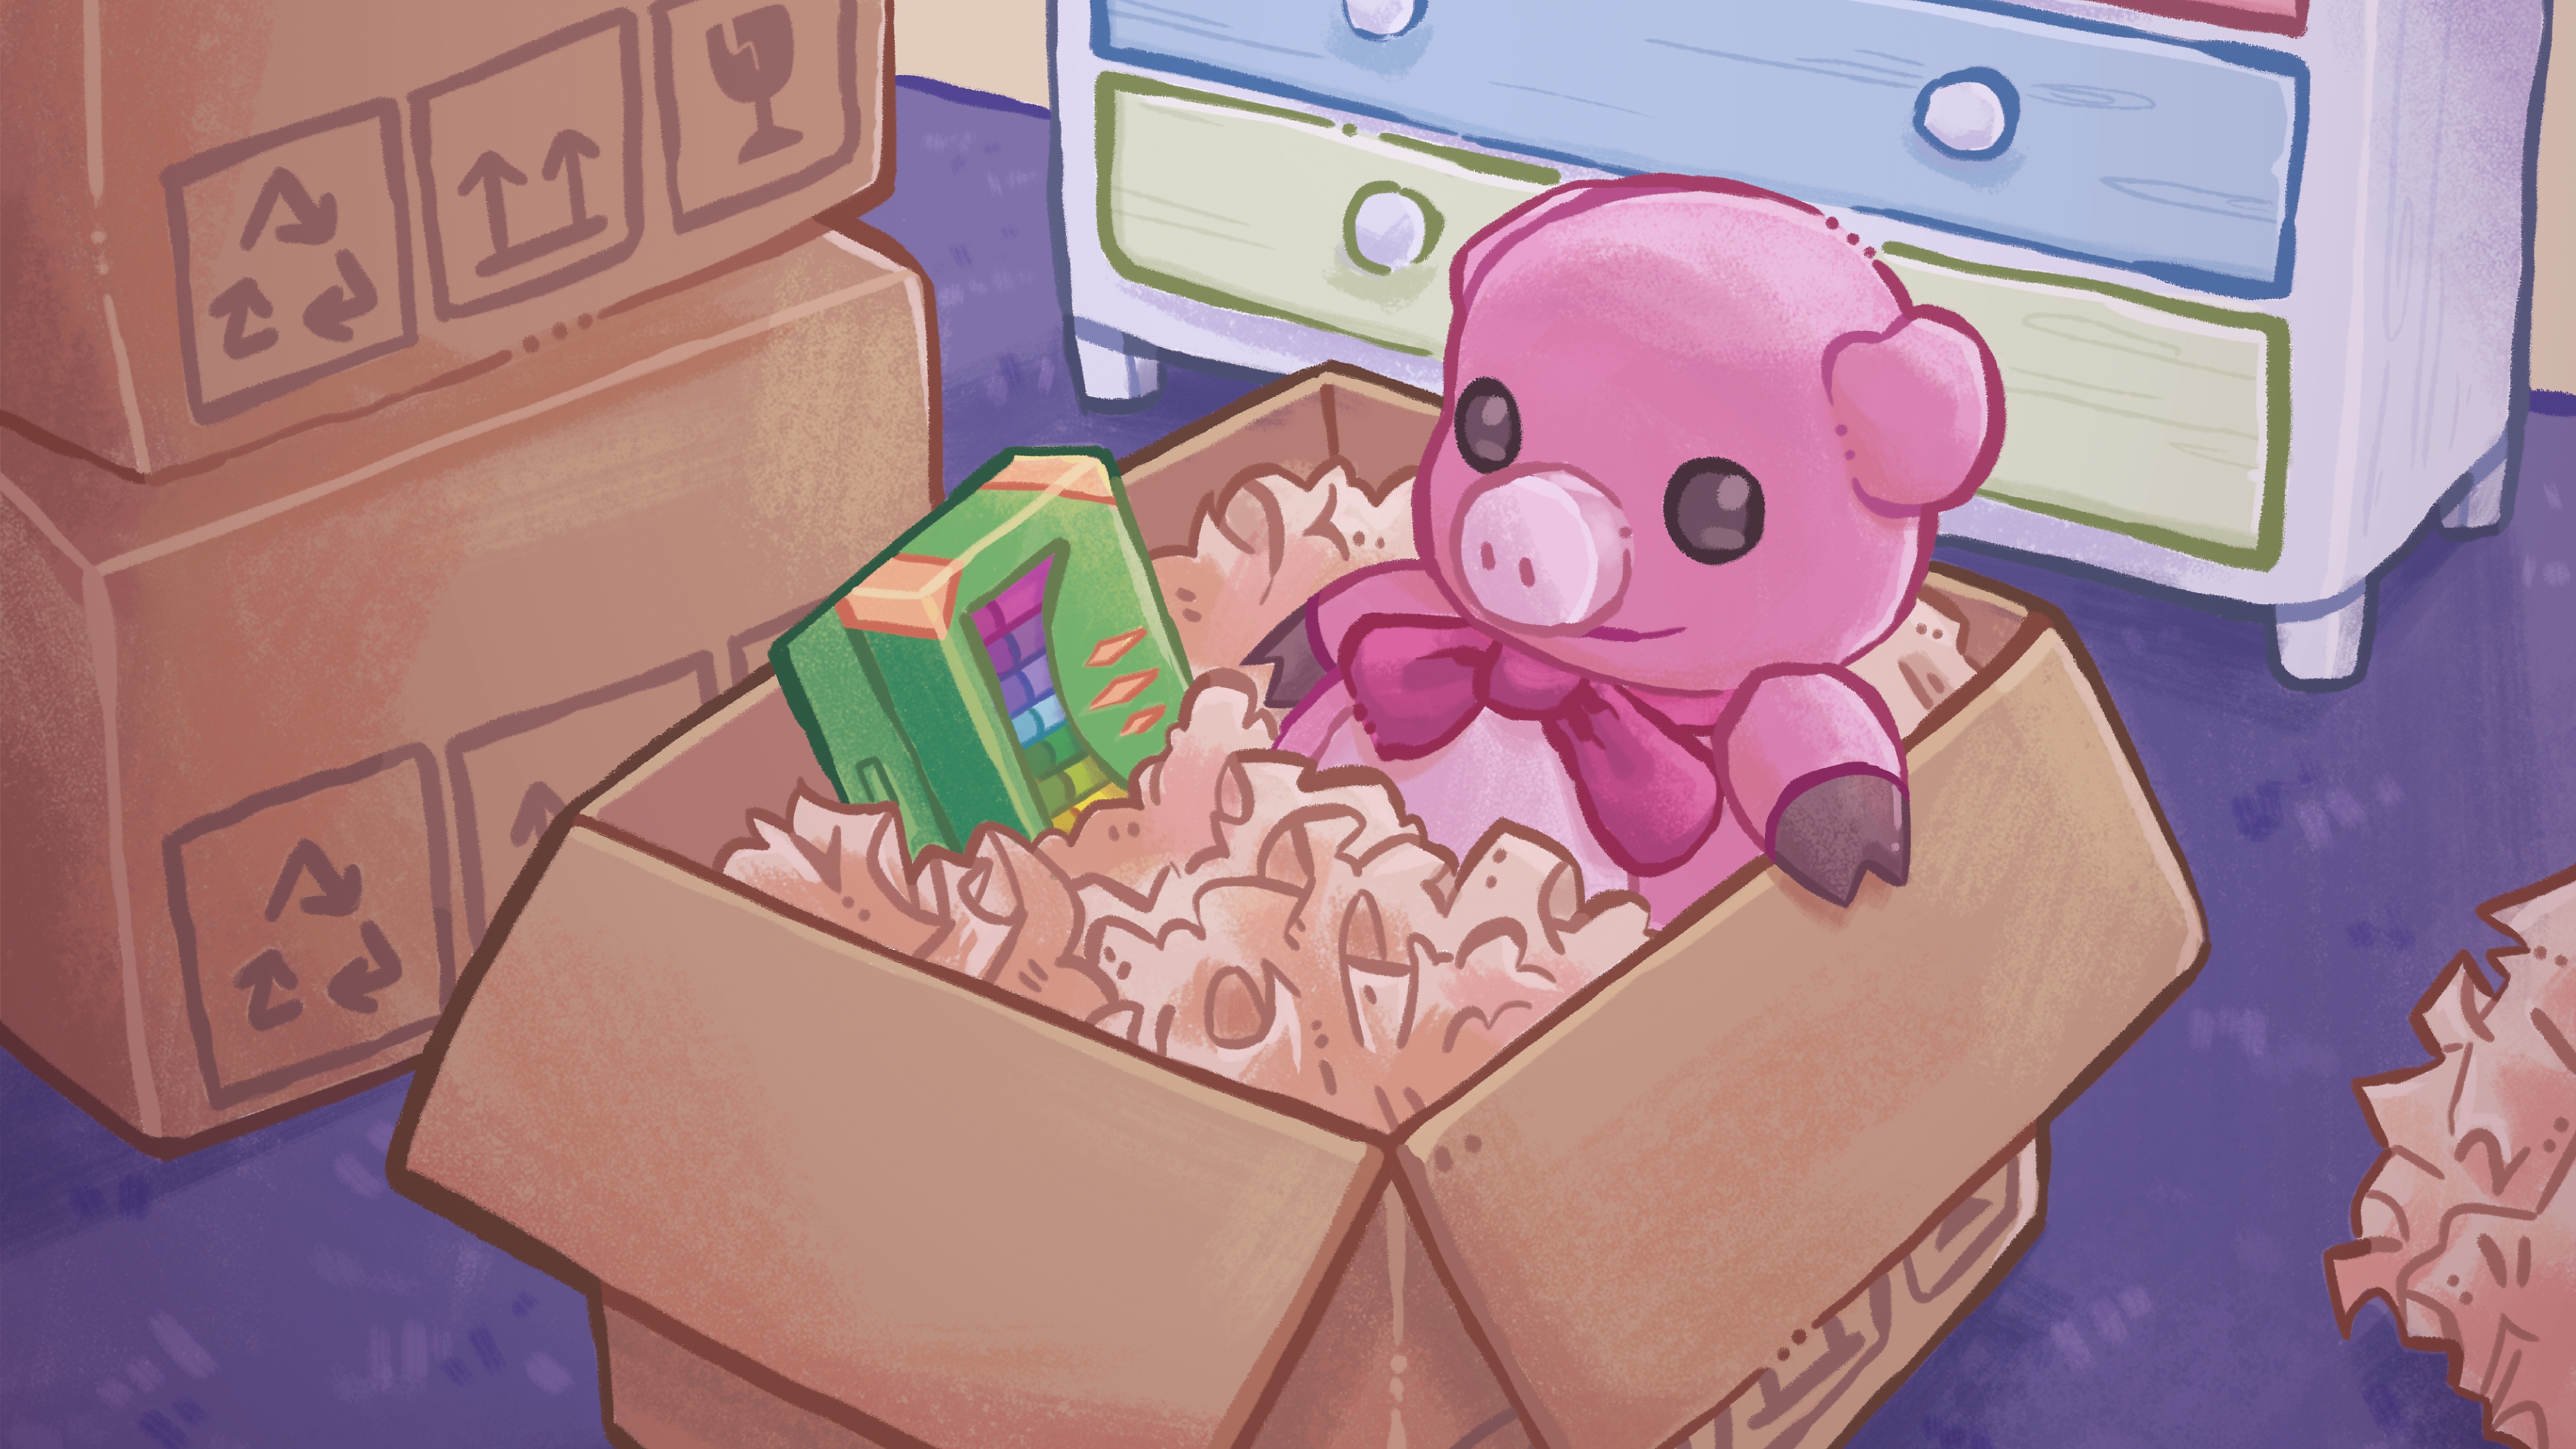 Unpacking – иллюстрация с красочным рисунком плюшевого медведя и коробкой мелков в картонной коробке.